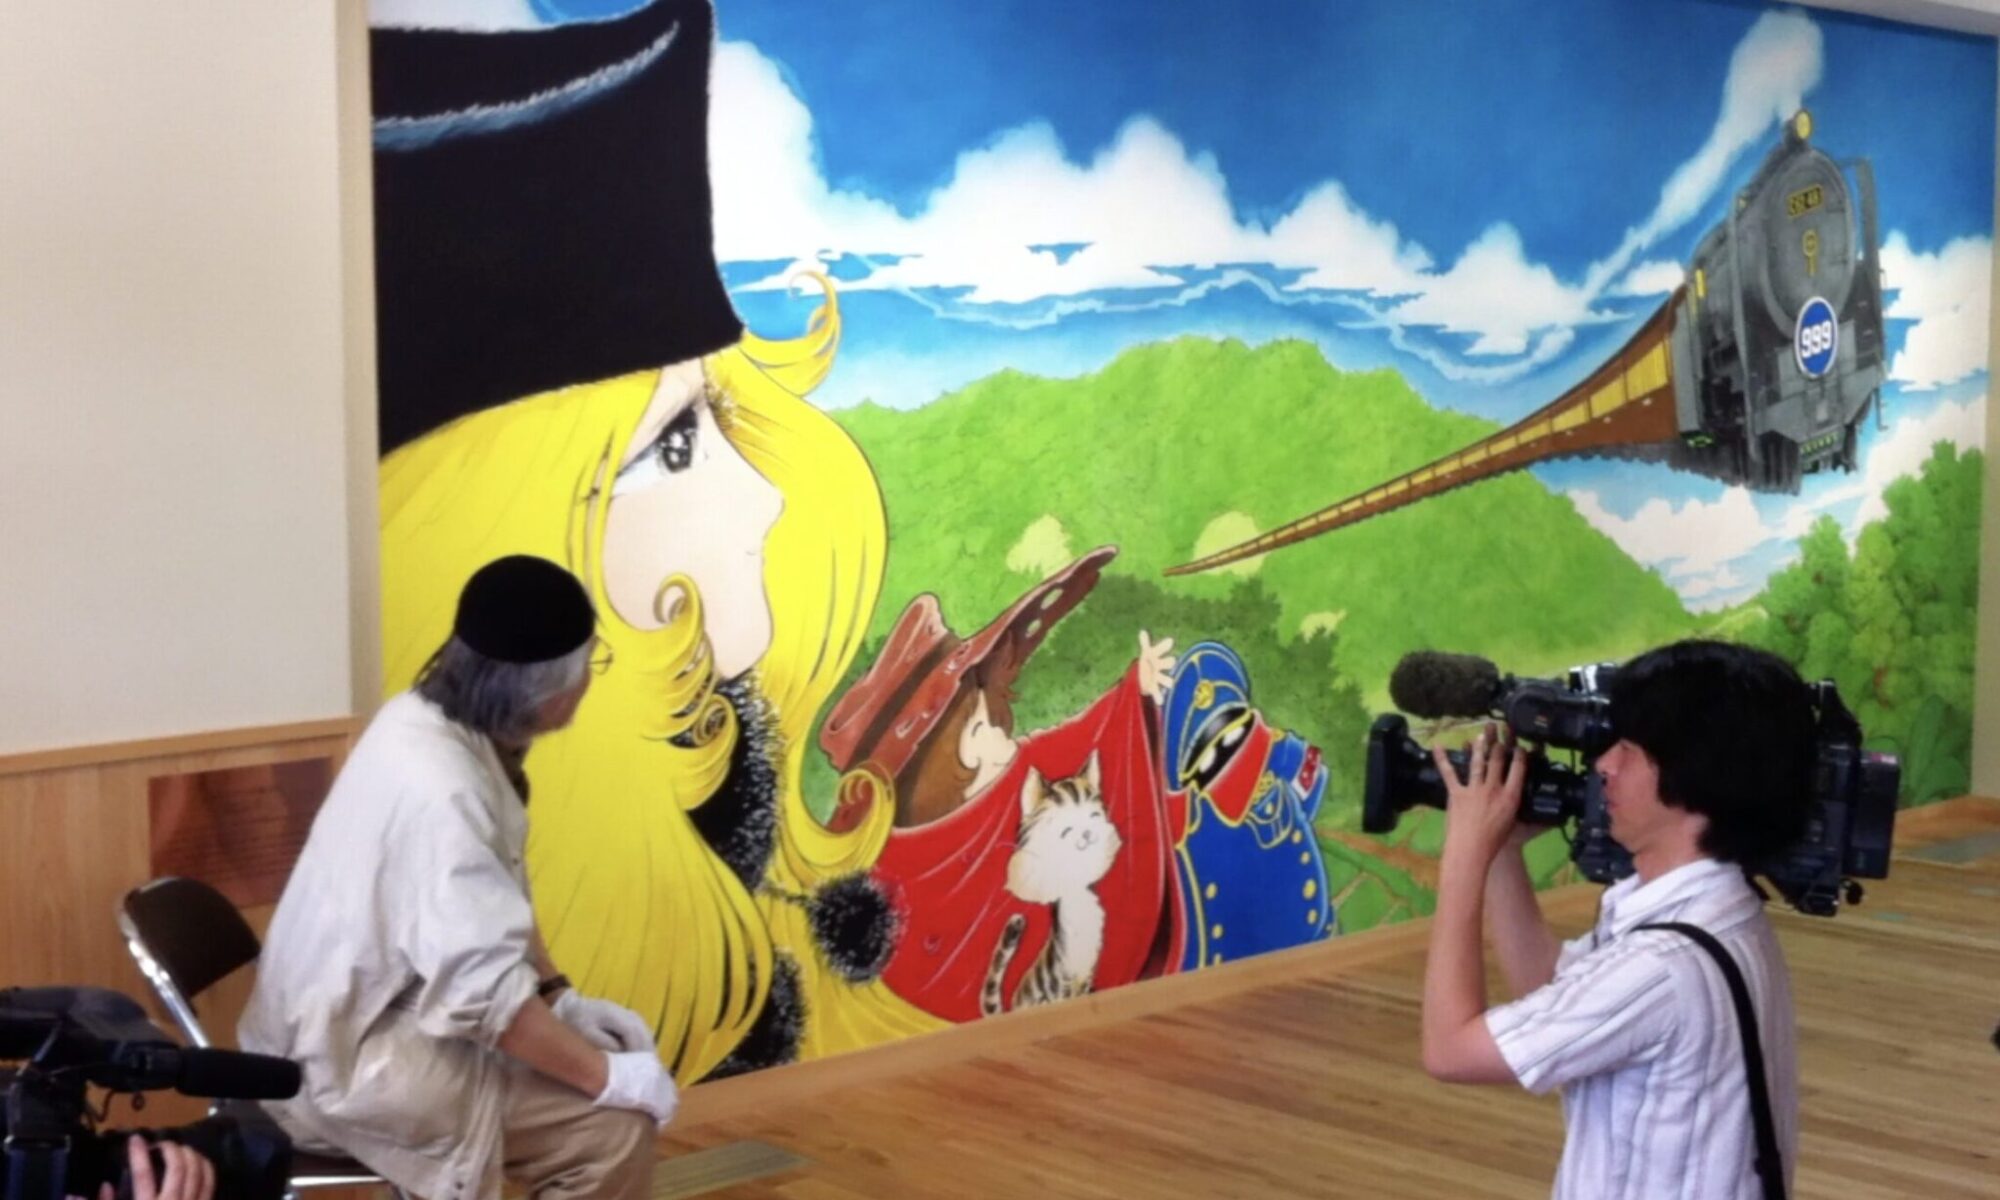 松本零士と作品の壁画